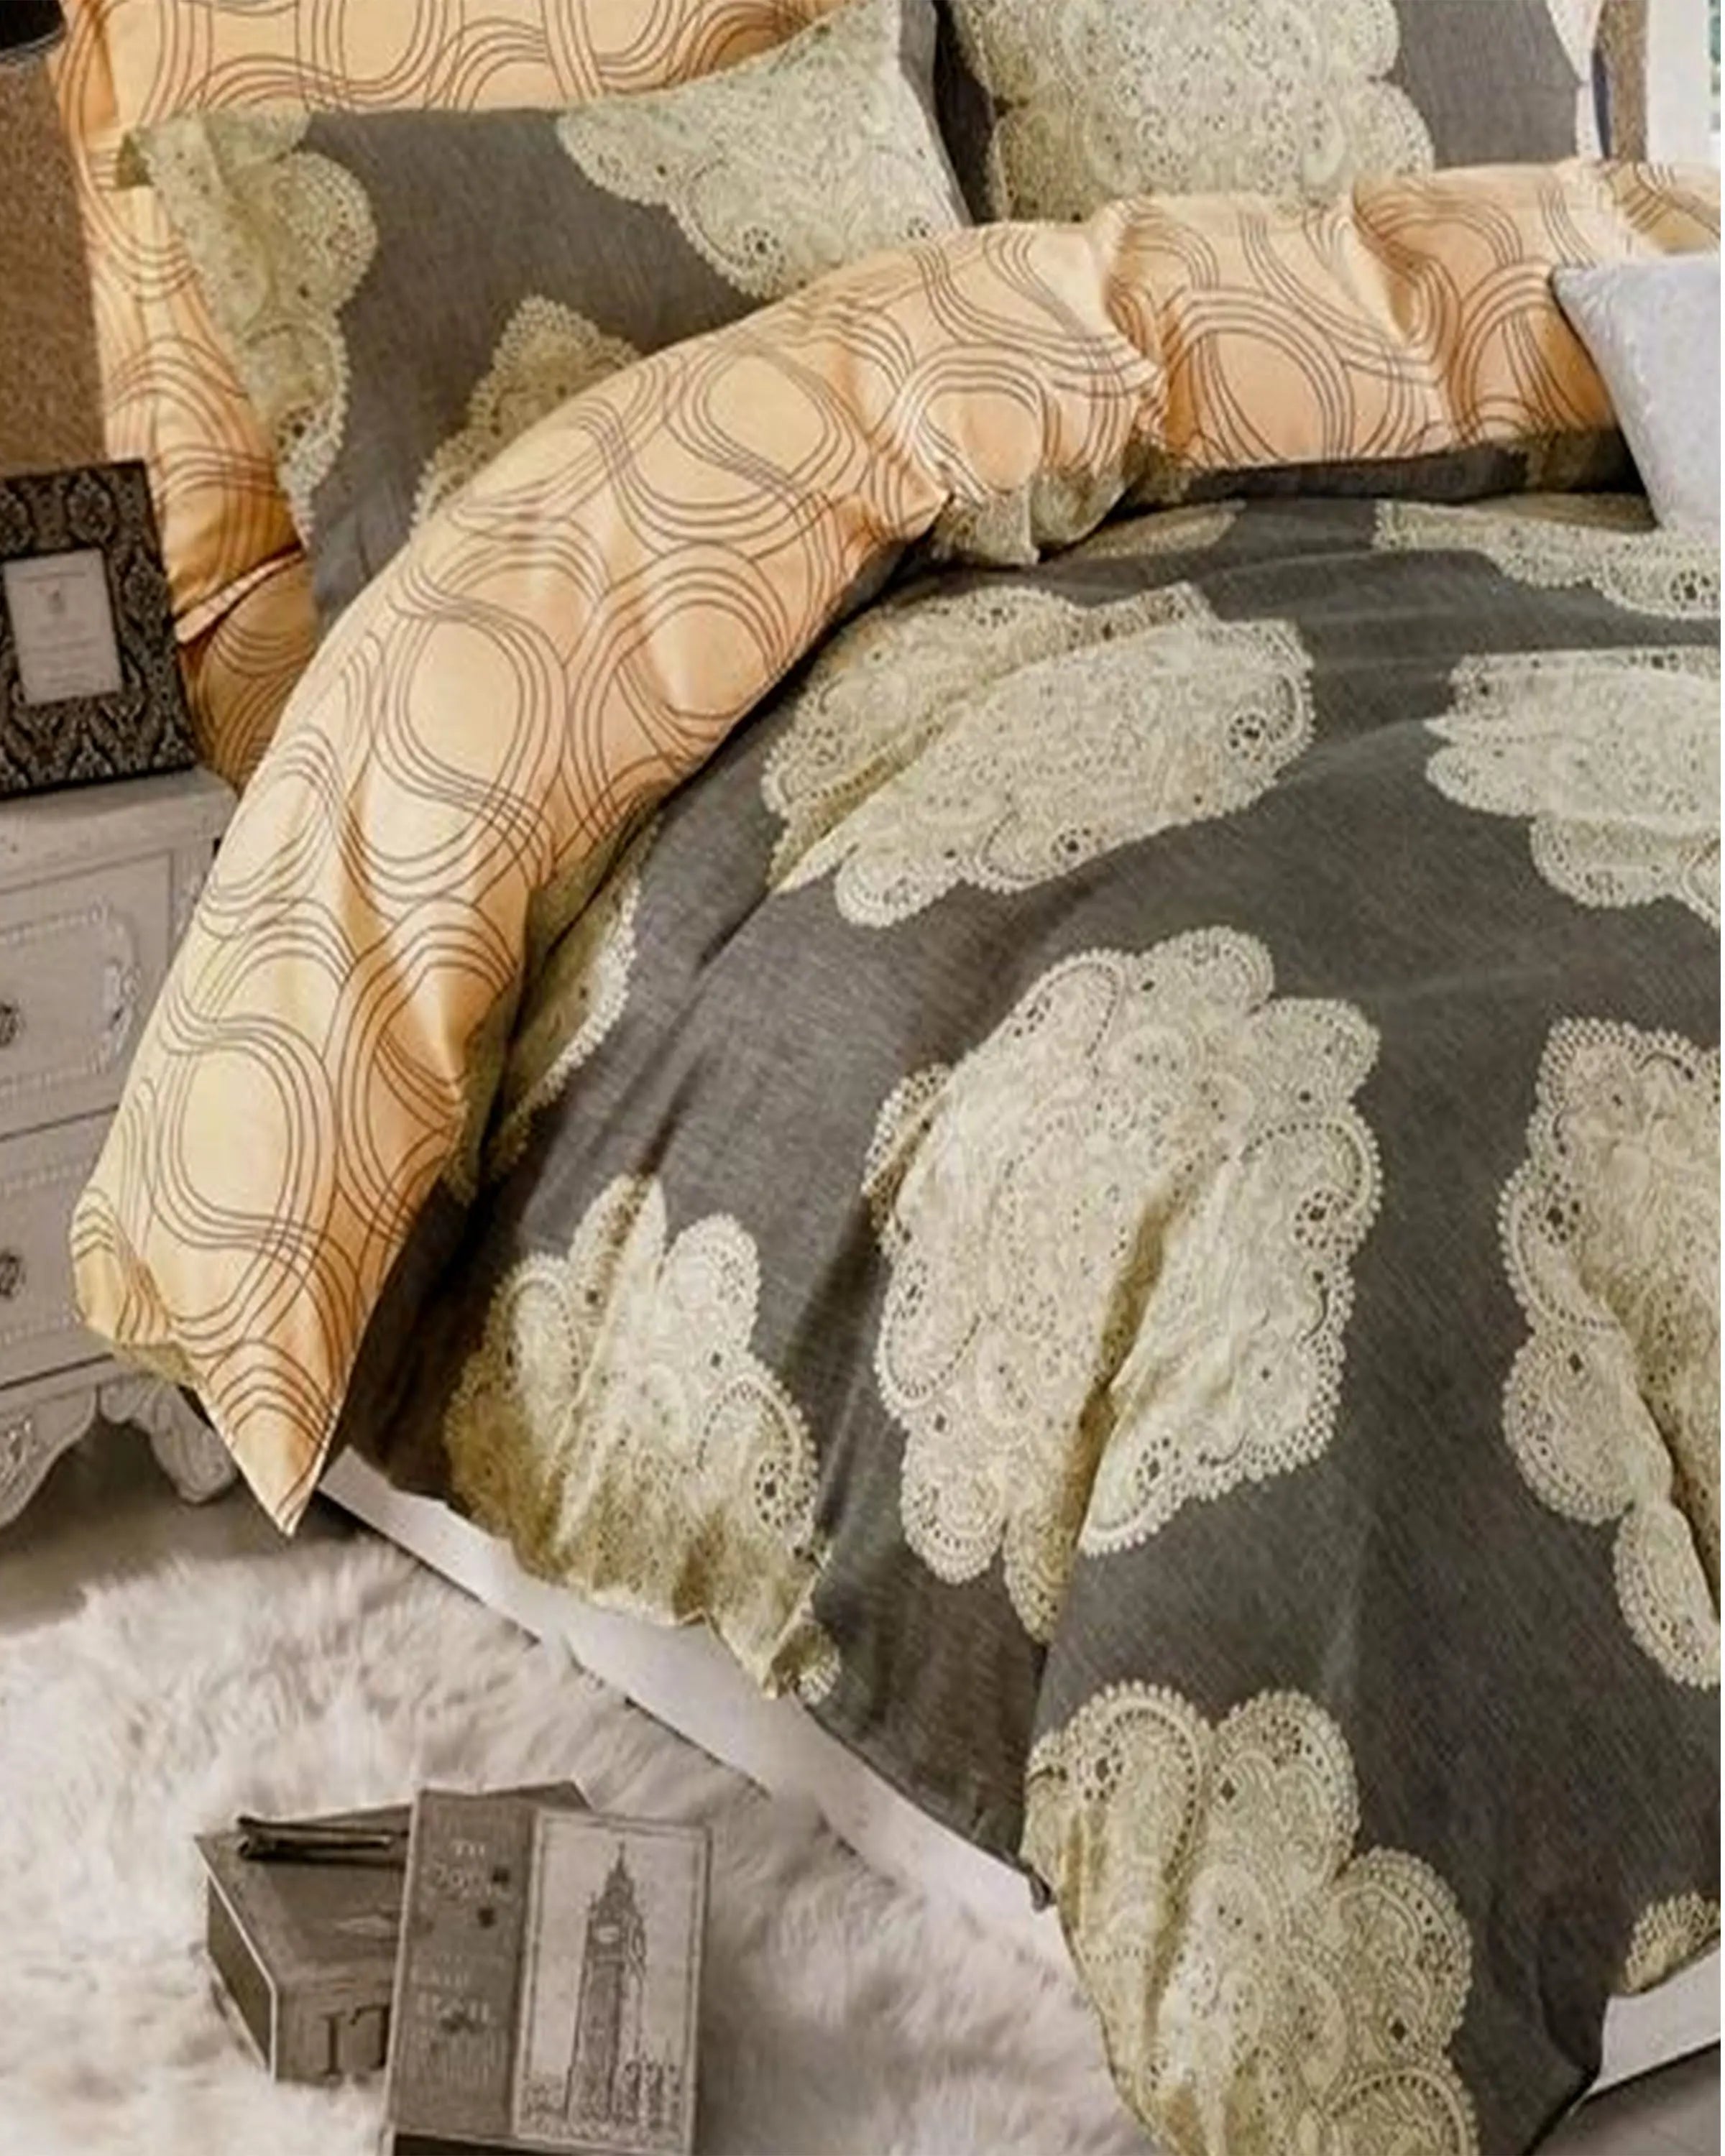 Purchase Online for Elegant Floral Pattern Bedding